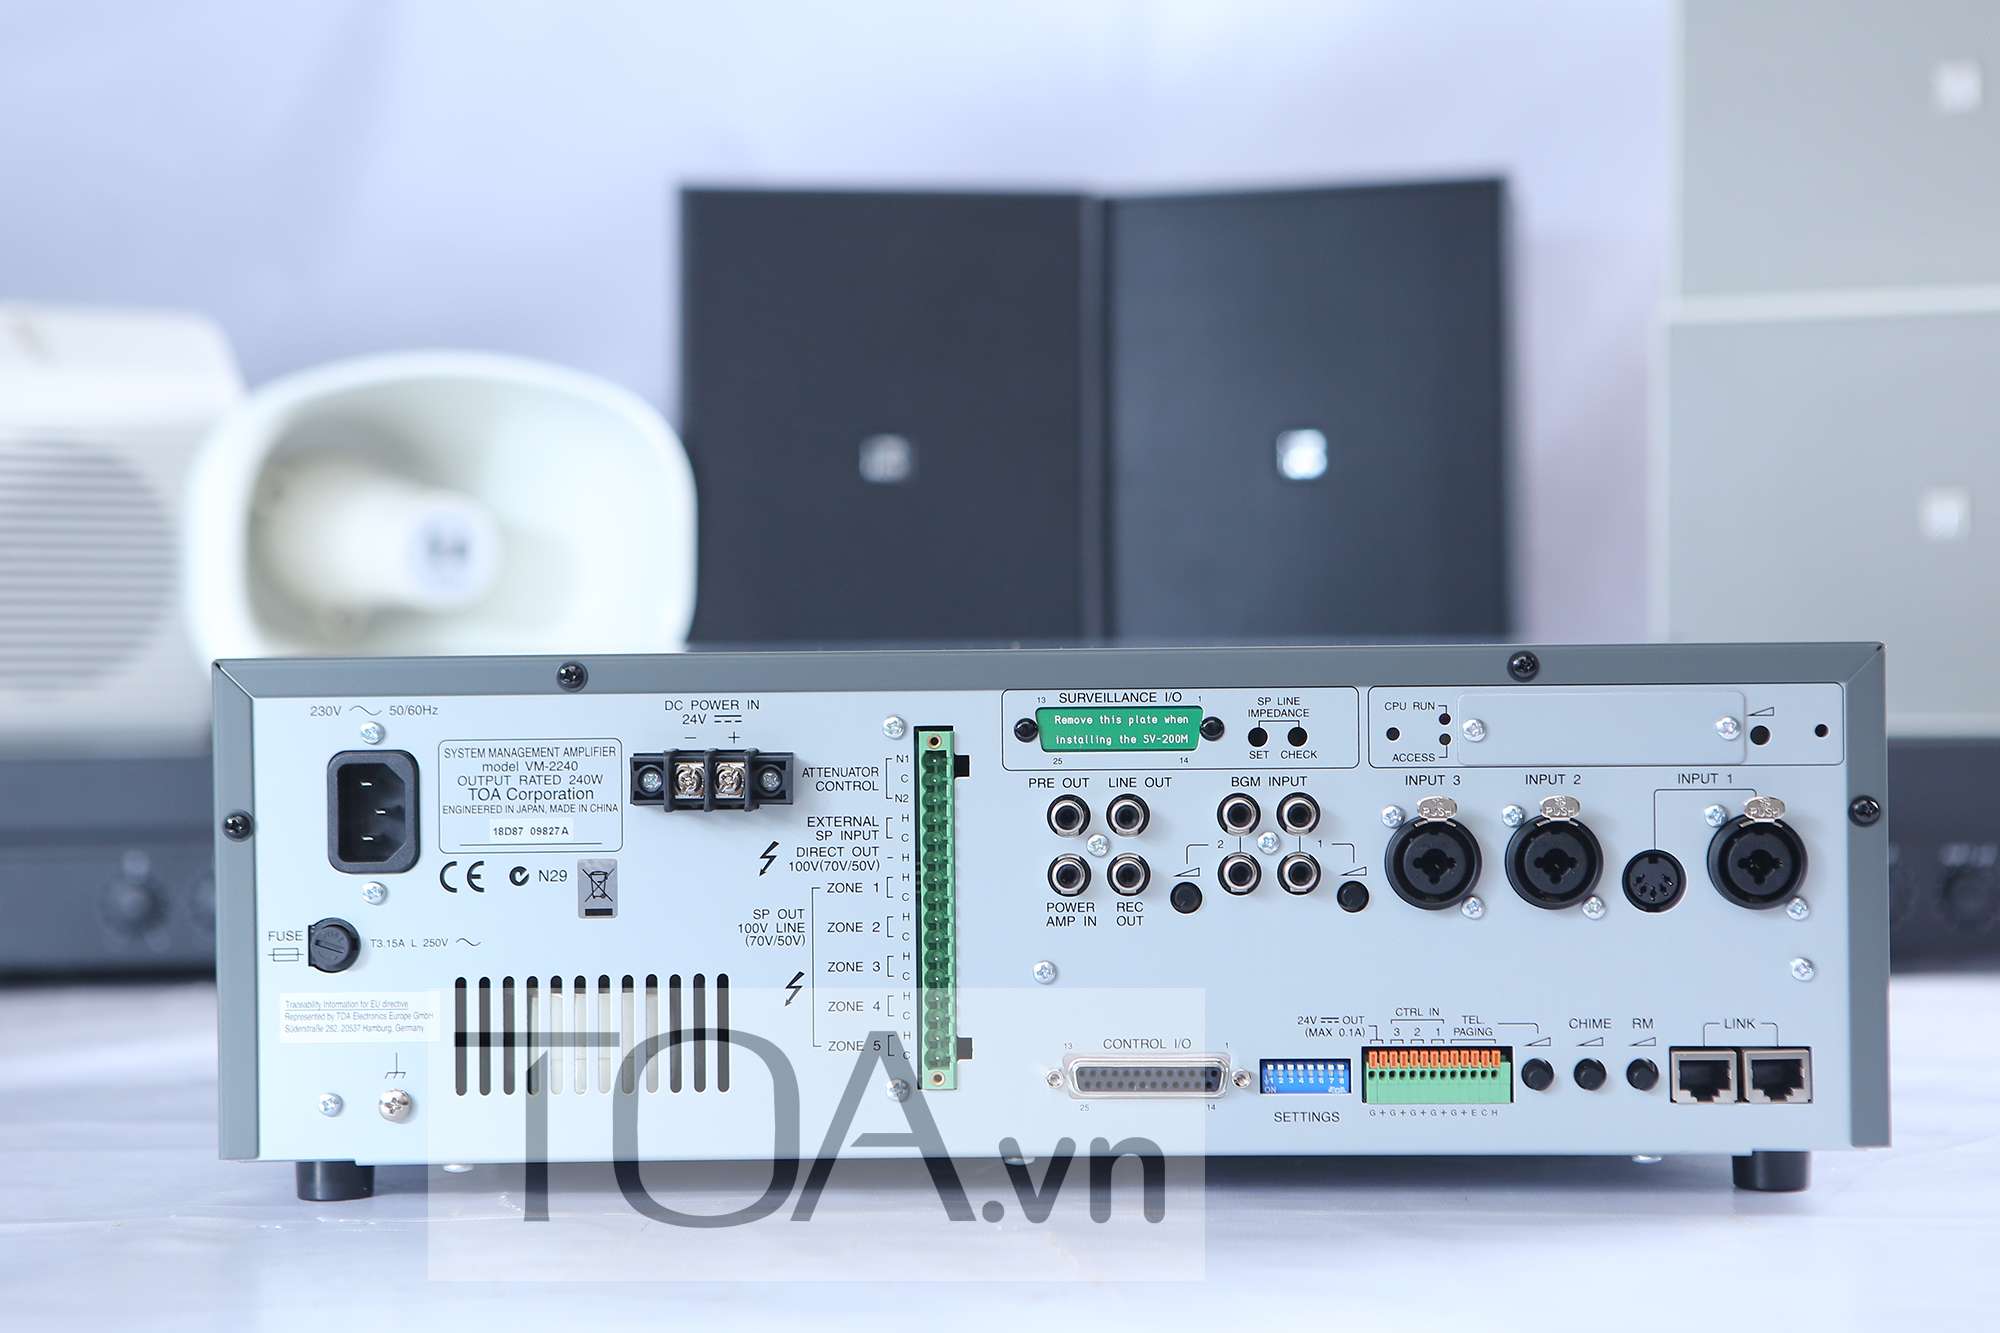 Hướng dẫn sử dụng ampli TOA VM-2240 trong hệ thống di tản VM-2000